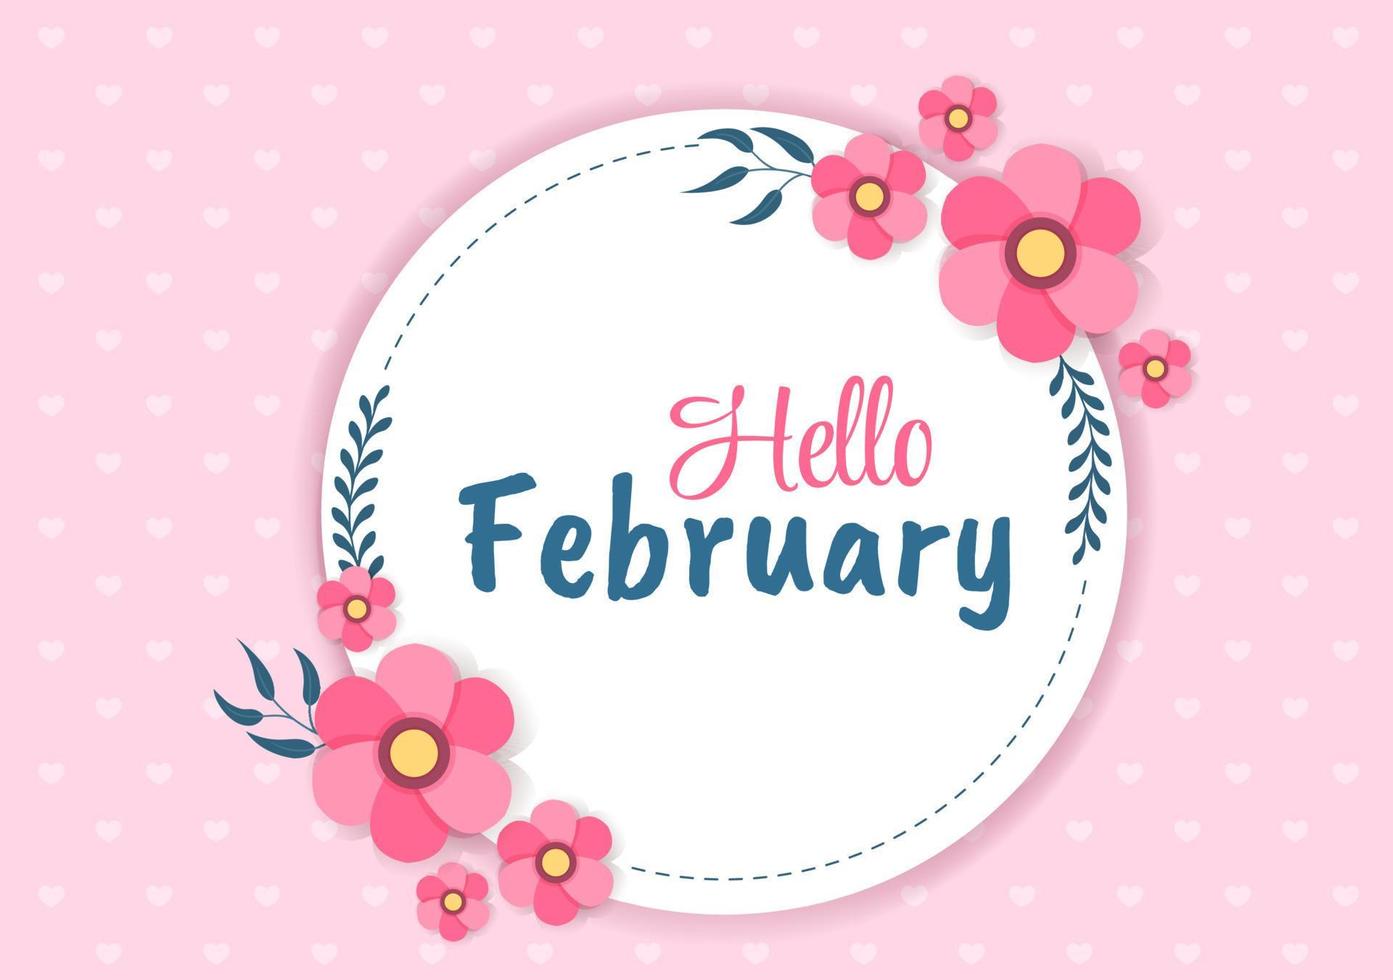 bonjour le mois de février avec des fleurs, des coeurs, des feuilles et des lettres mignonnes pour le fond de la décoration dans l'illustration de modèles dessinés à la main de dessin animé plat vecteur